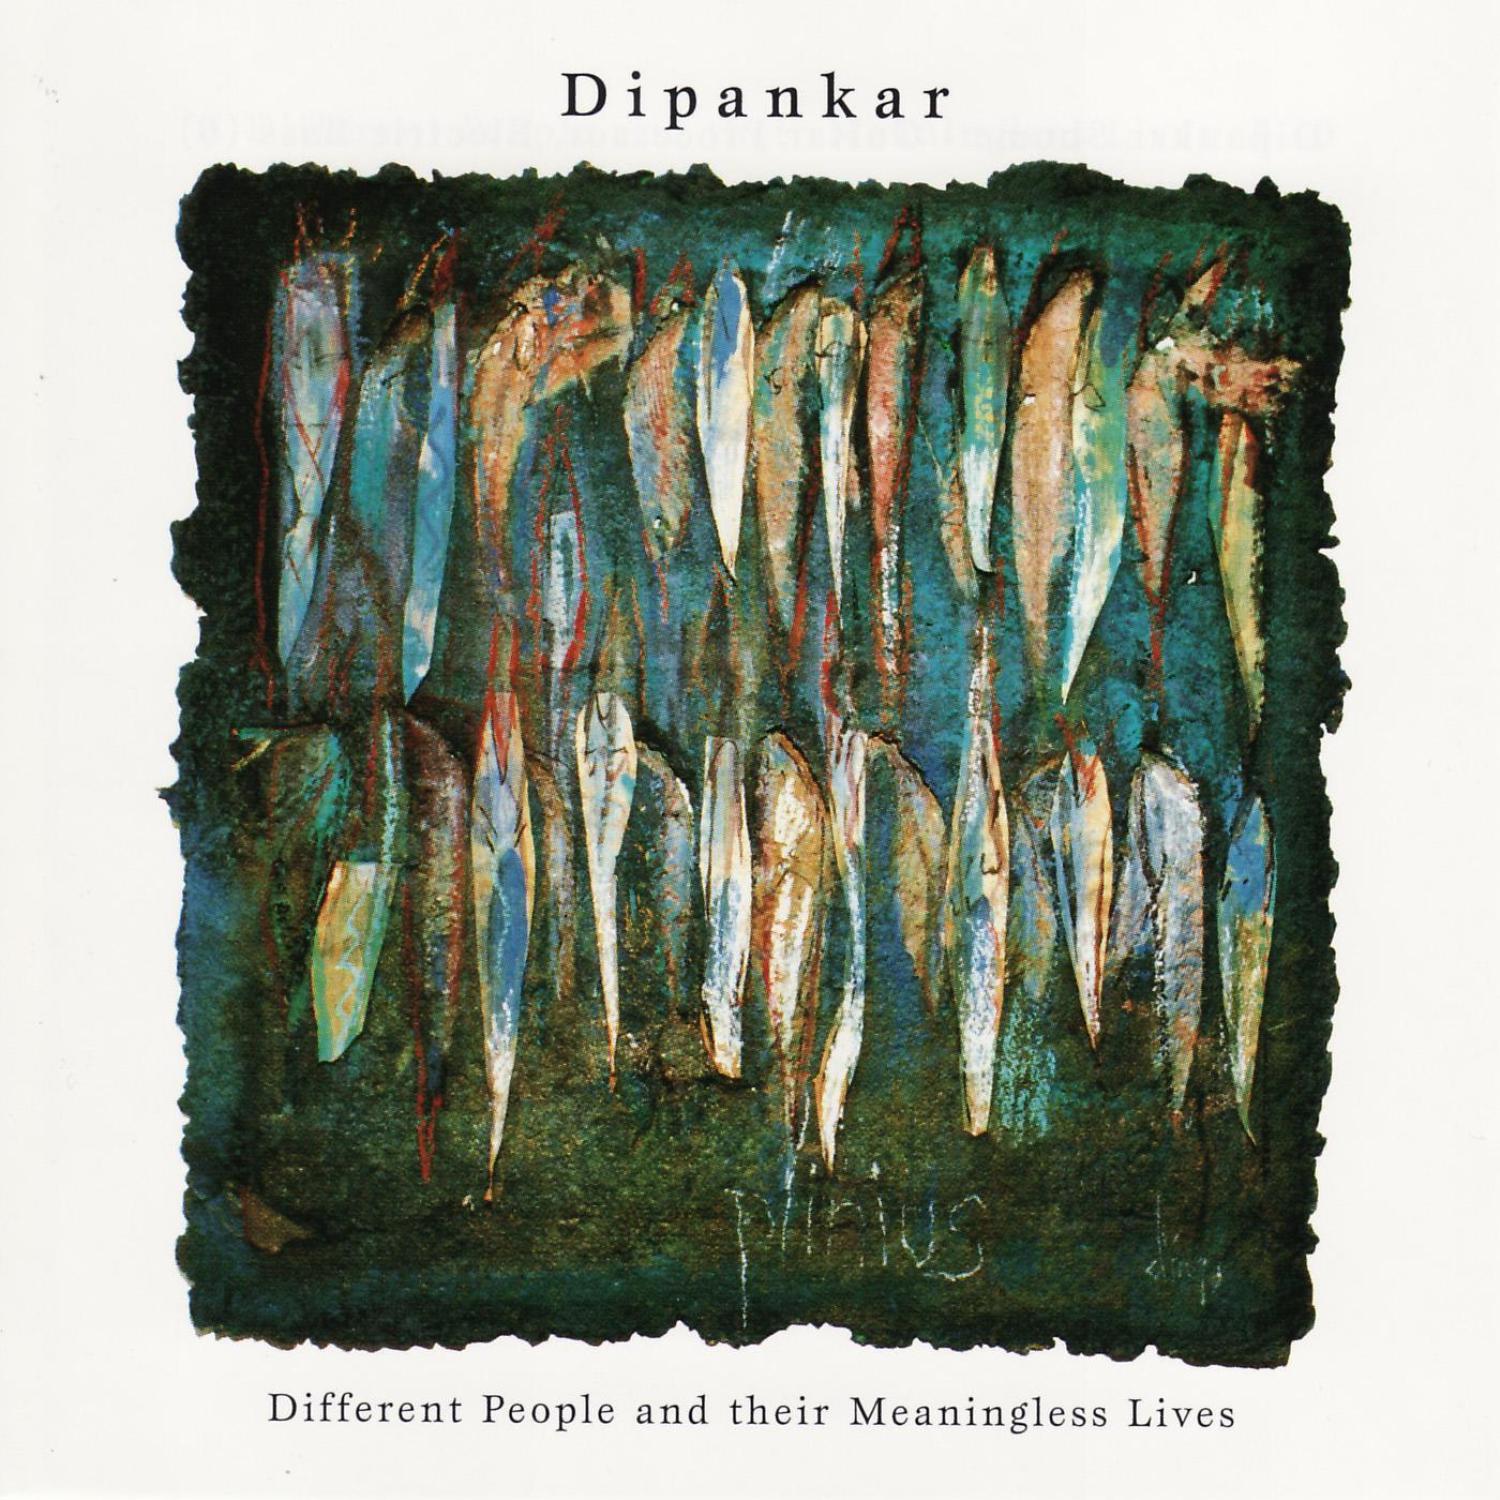 Dipankar - Thoughts